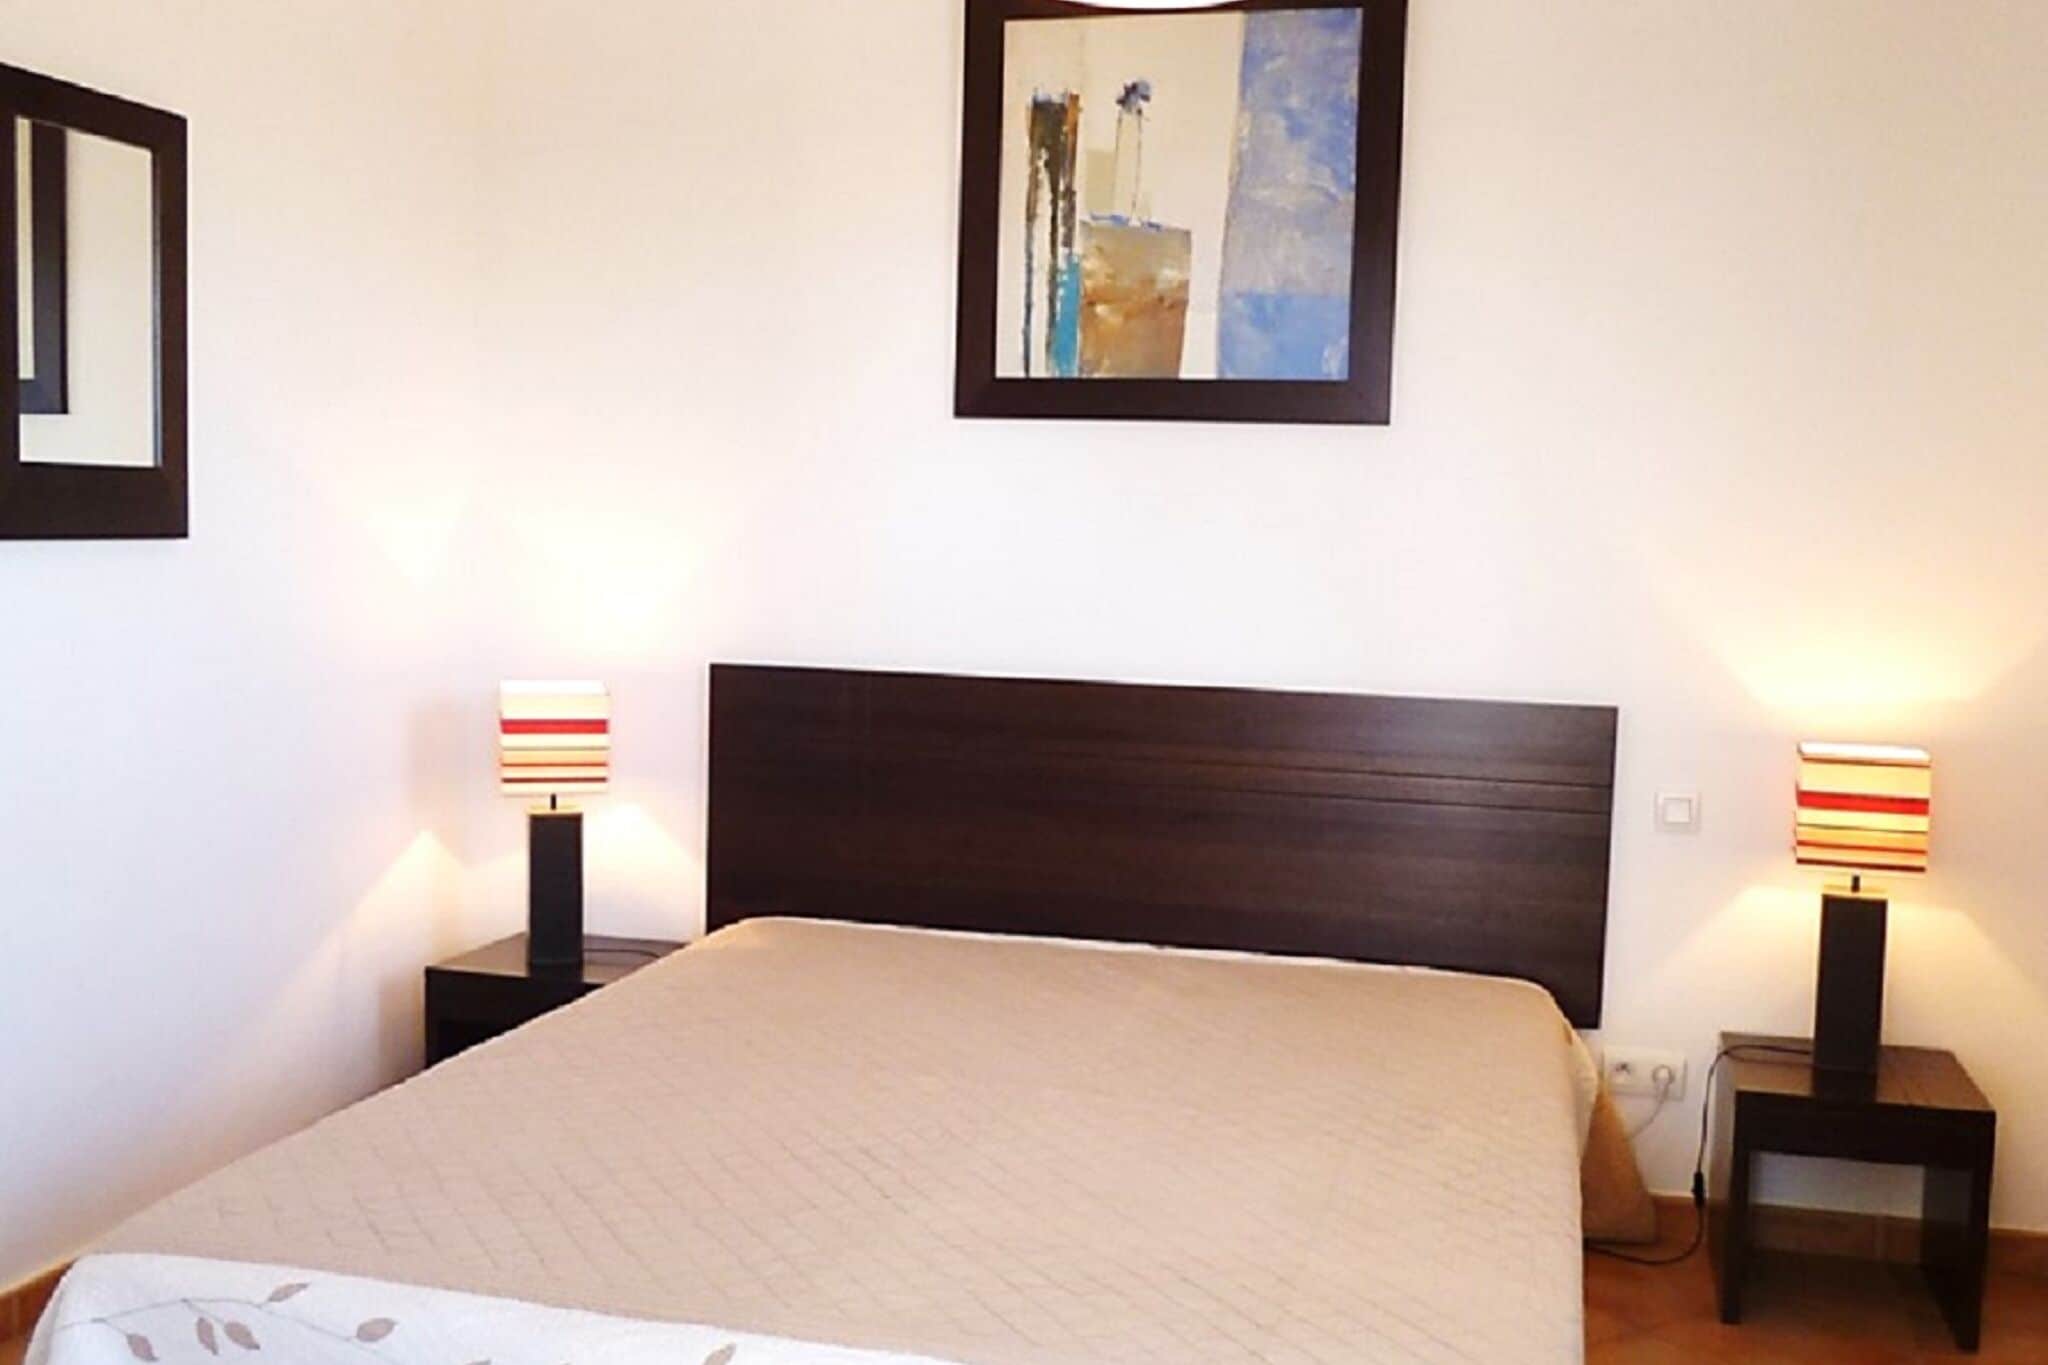 Appartement avec climatisation située entre Fréjus et le golfe de Saint Tropez